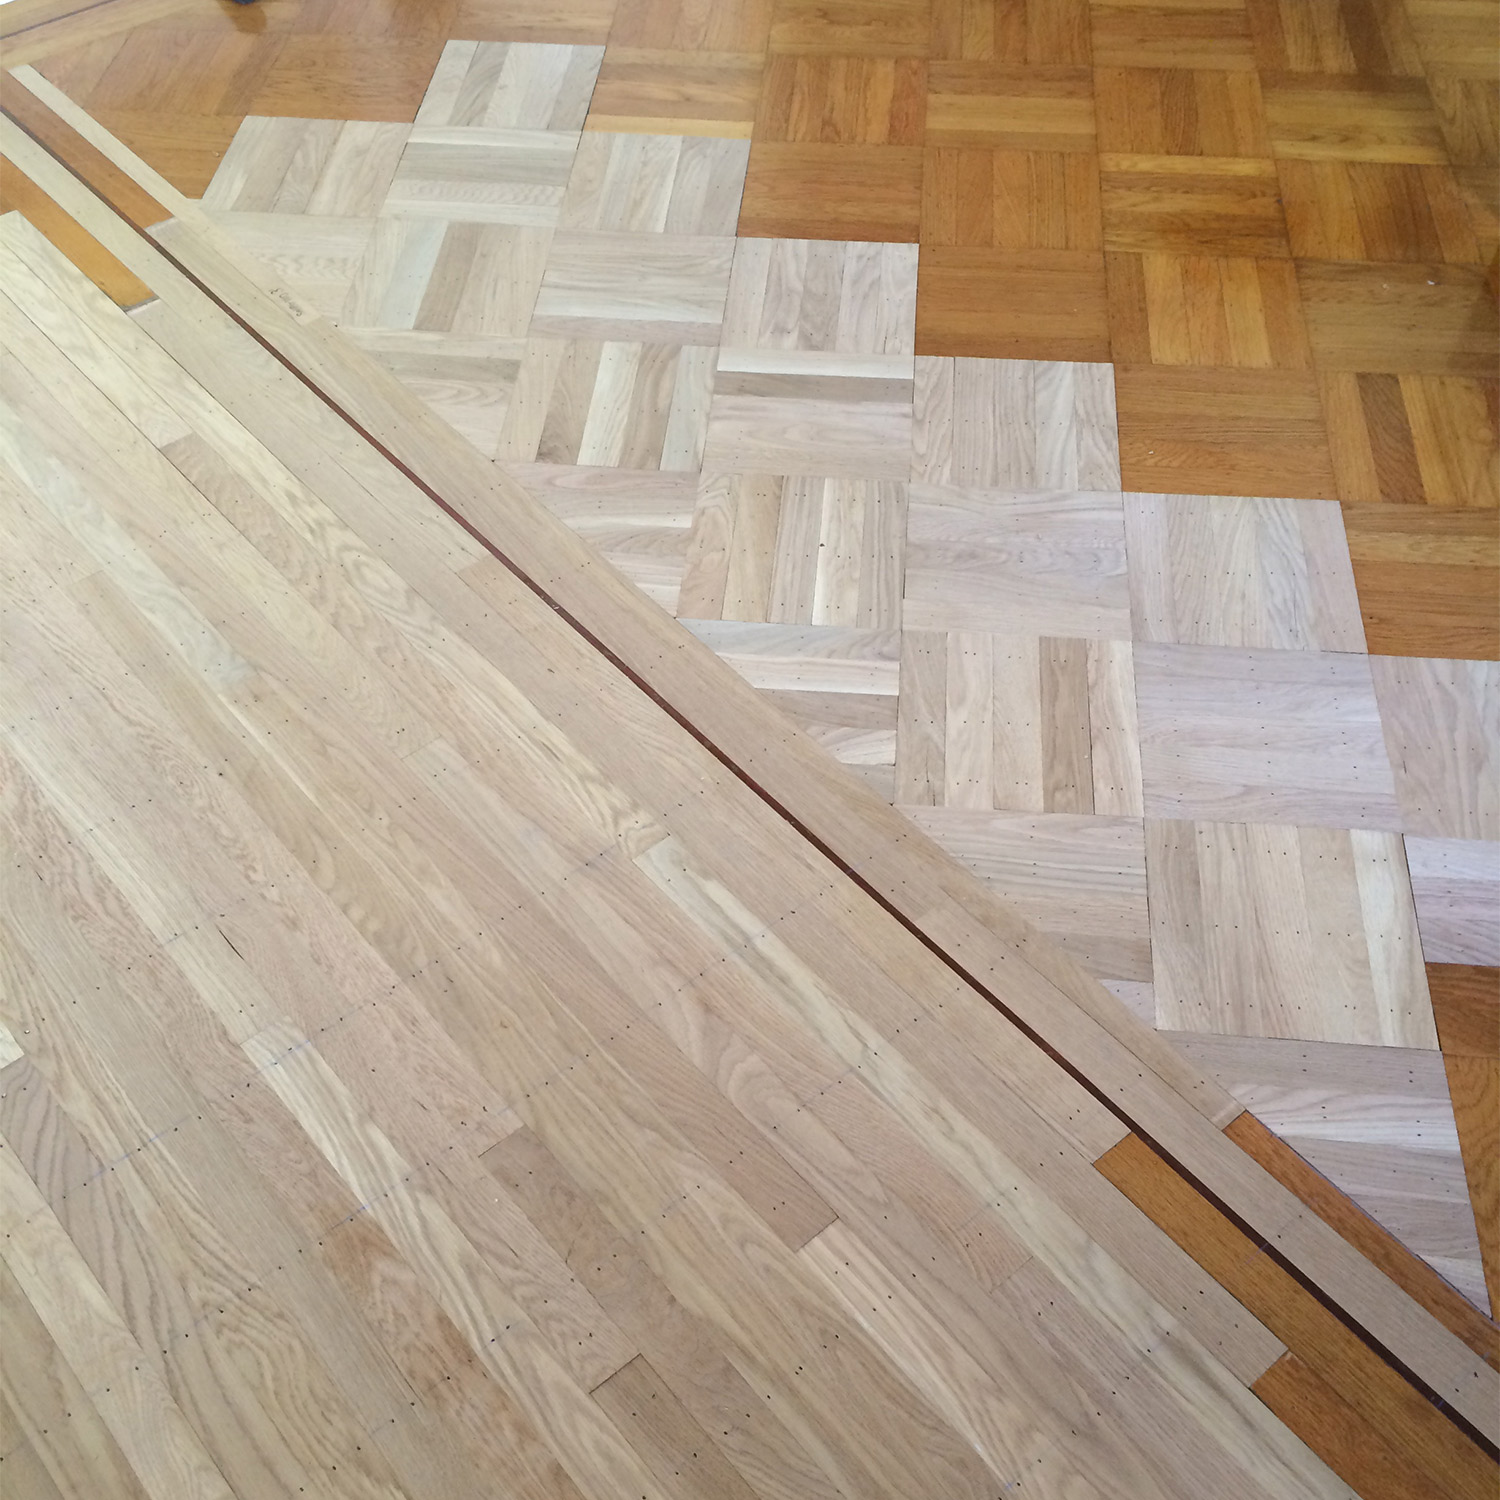 Refinish Avi S Hardwood Floors Inc, Hardwood Floor Refinishing Concord Ca